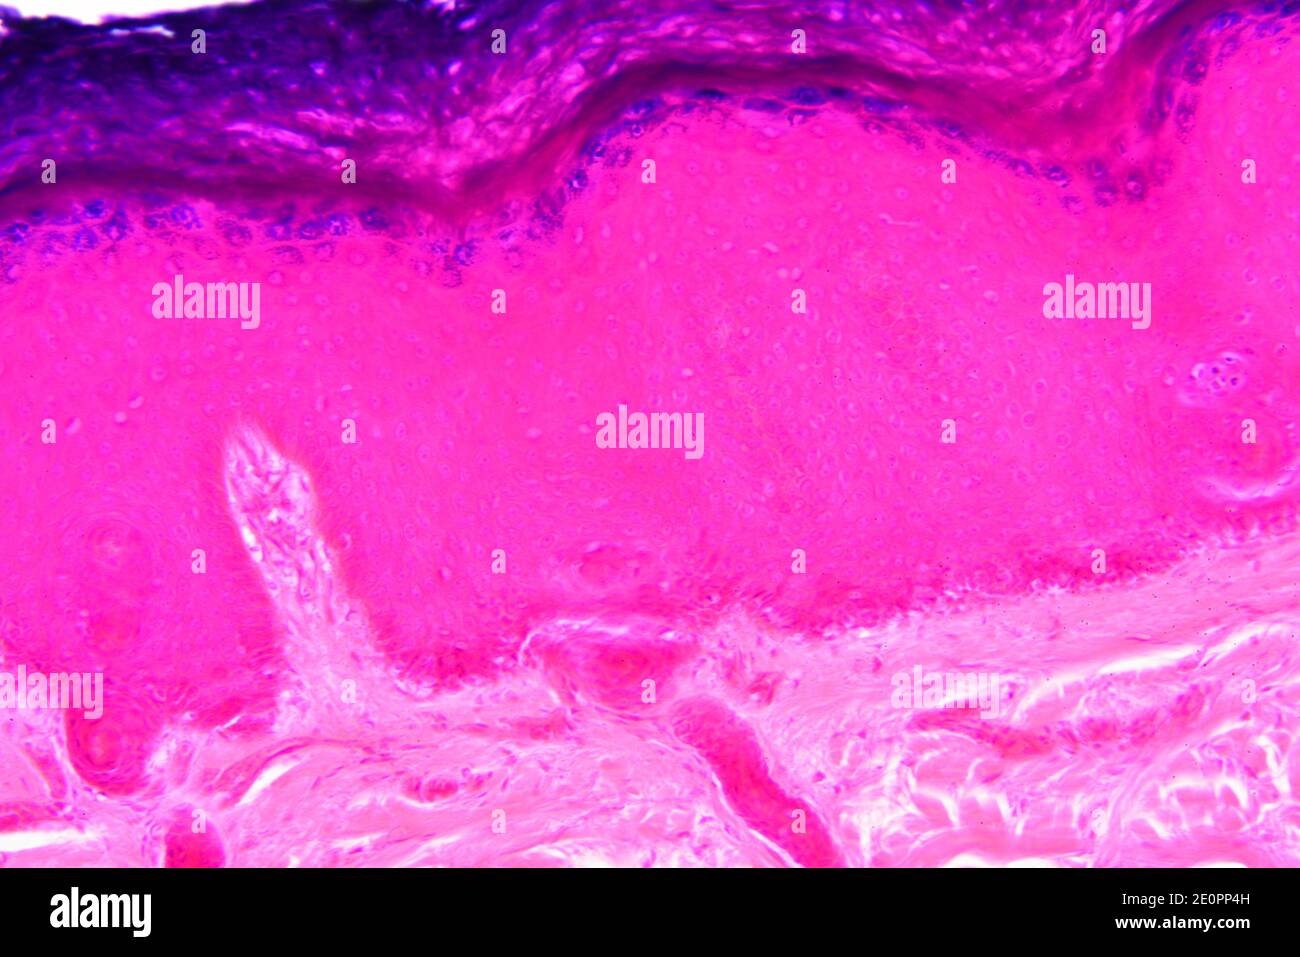 Piel humana que se muestra de arriba a abajo: Epidermis con estrato córneo, estrato granulosum, estrato spinosum, estrato basale y dermis. X125 a 10 cm Foto de stock